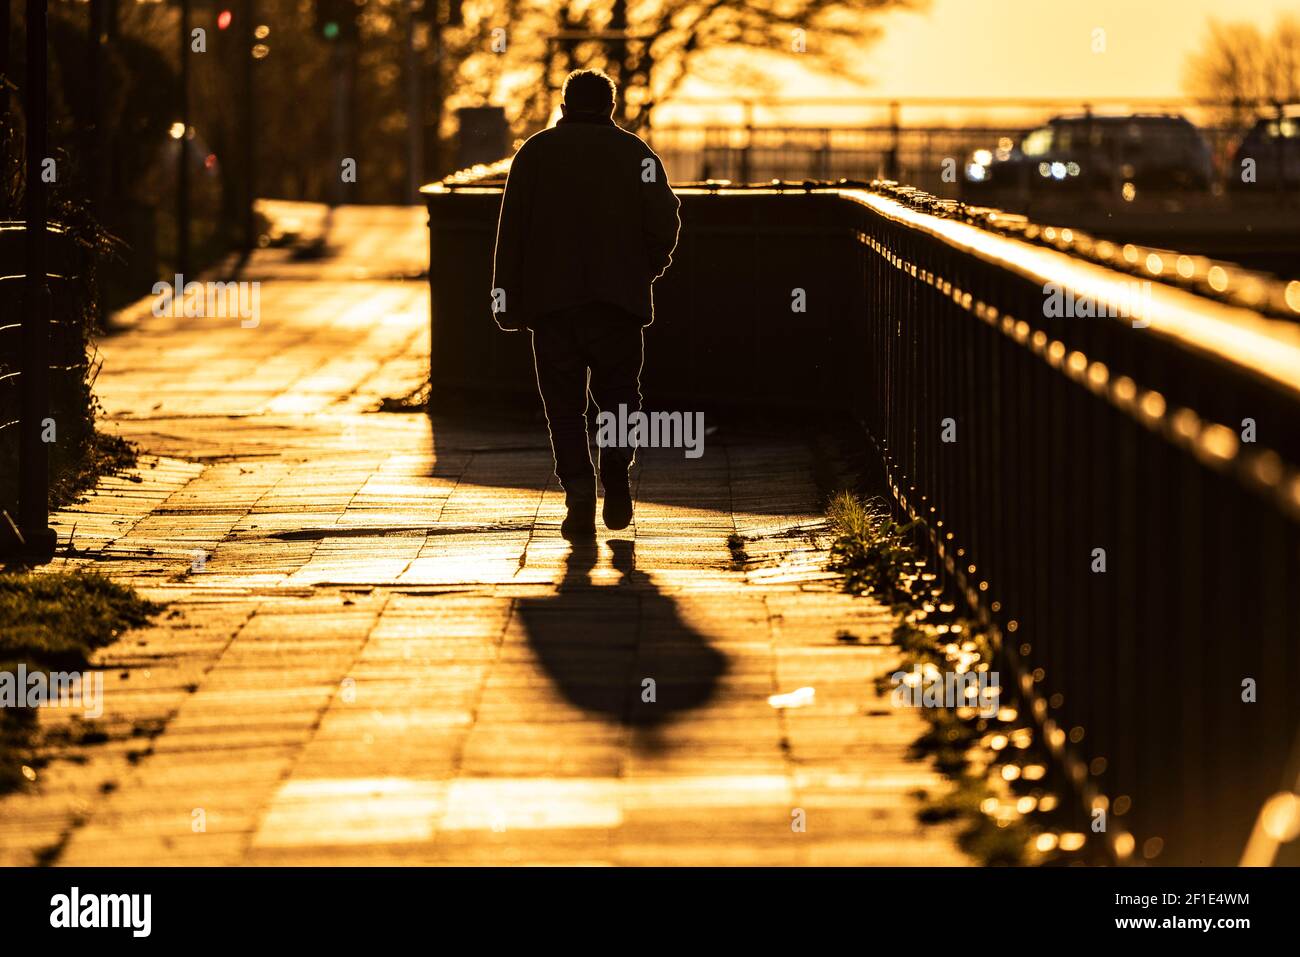 Uomo, anziano, camminando su un marciapiede, nel sole che tramonta, lunga ombra di getto, immagine simbolica, Essen, NRW, Germania Foto Stock